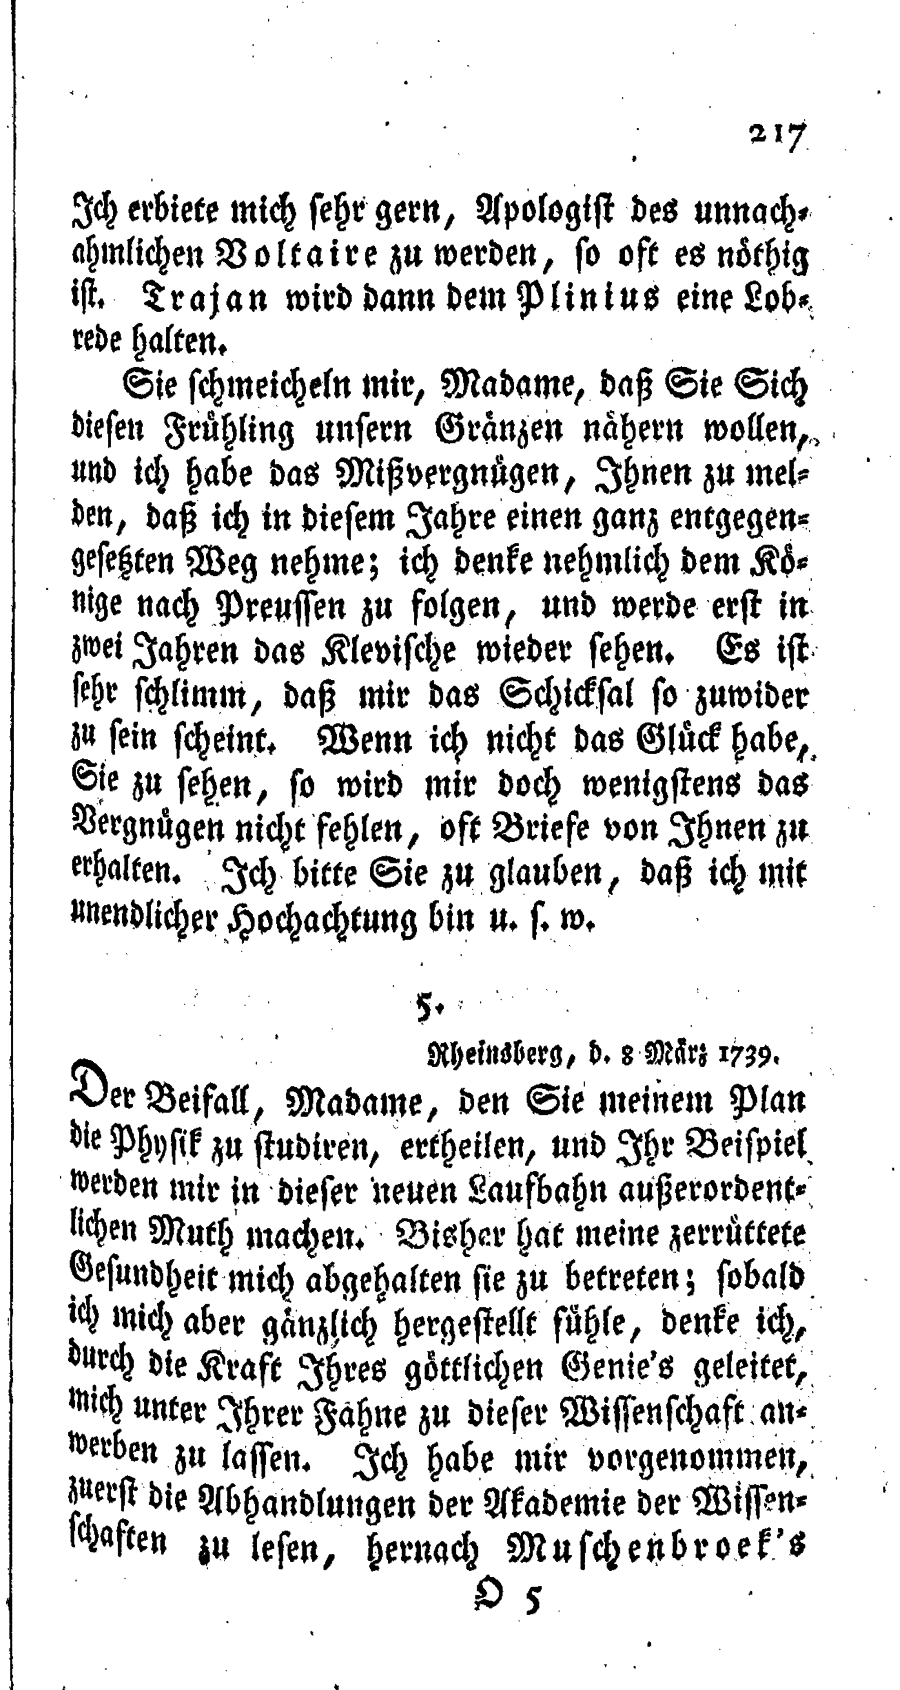 S. 217, Obj. 2